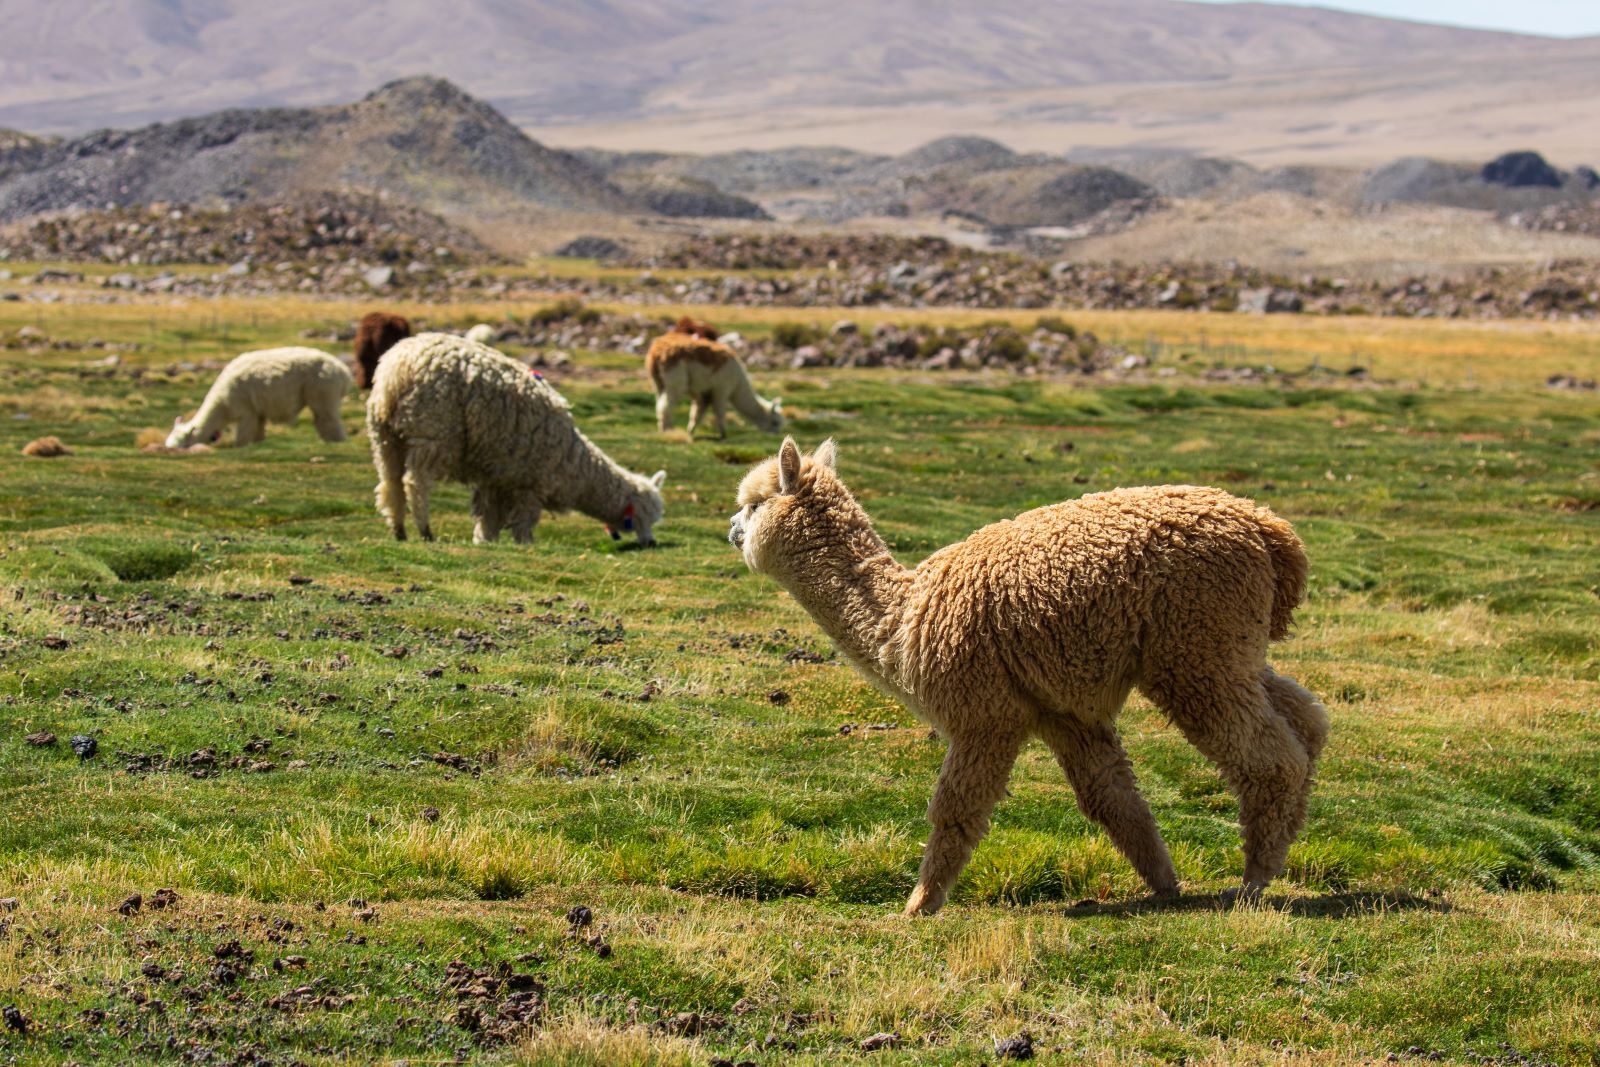 Experto en climatología explica los riesgos del cambio climático en el altiplano